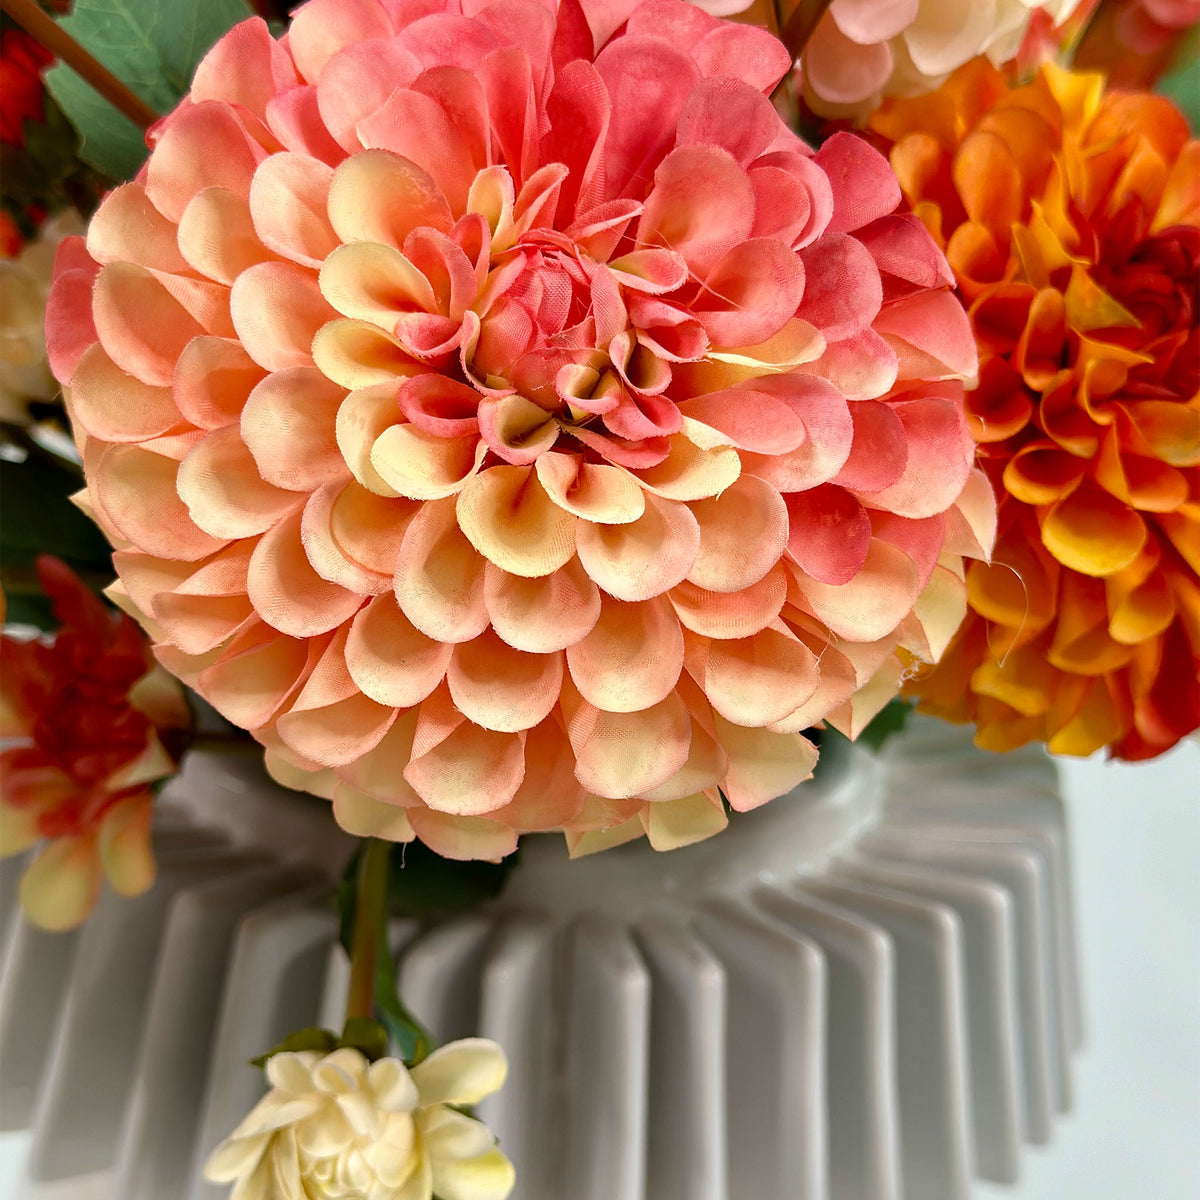 Dahlia Arrangement In Ceramic Vase